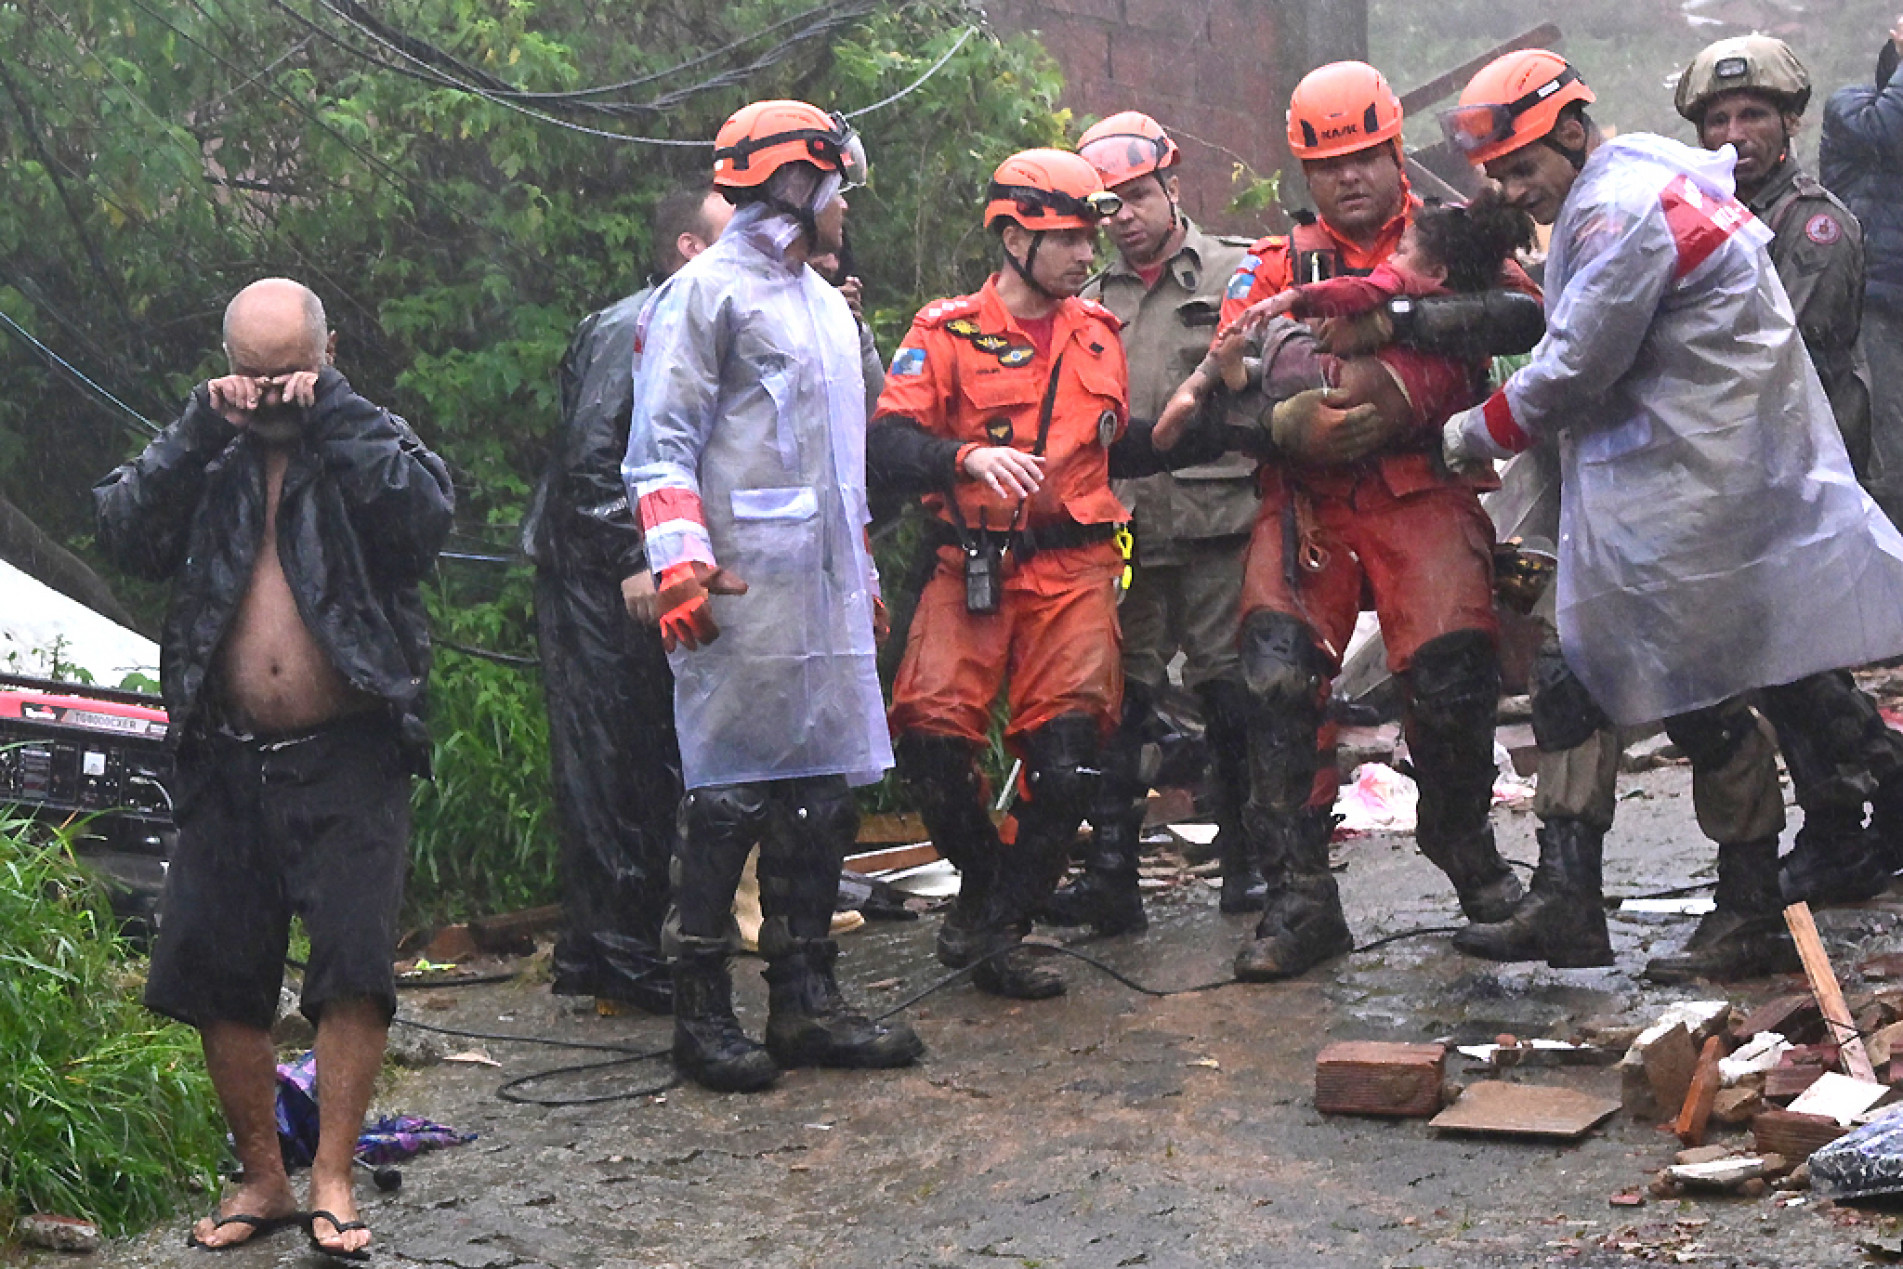 Em Petrópolis, uma menina foi resgatada com vida após permanecer soterrada por 16 horas
